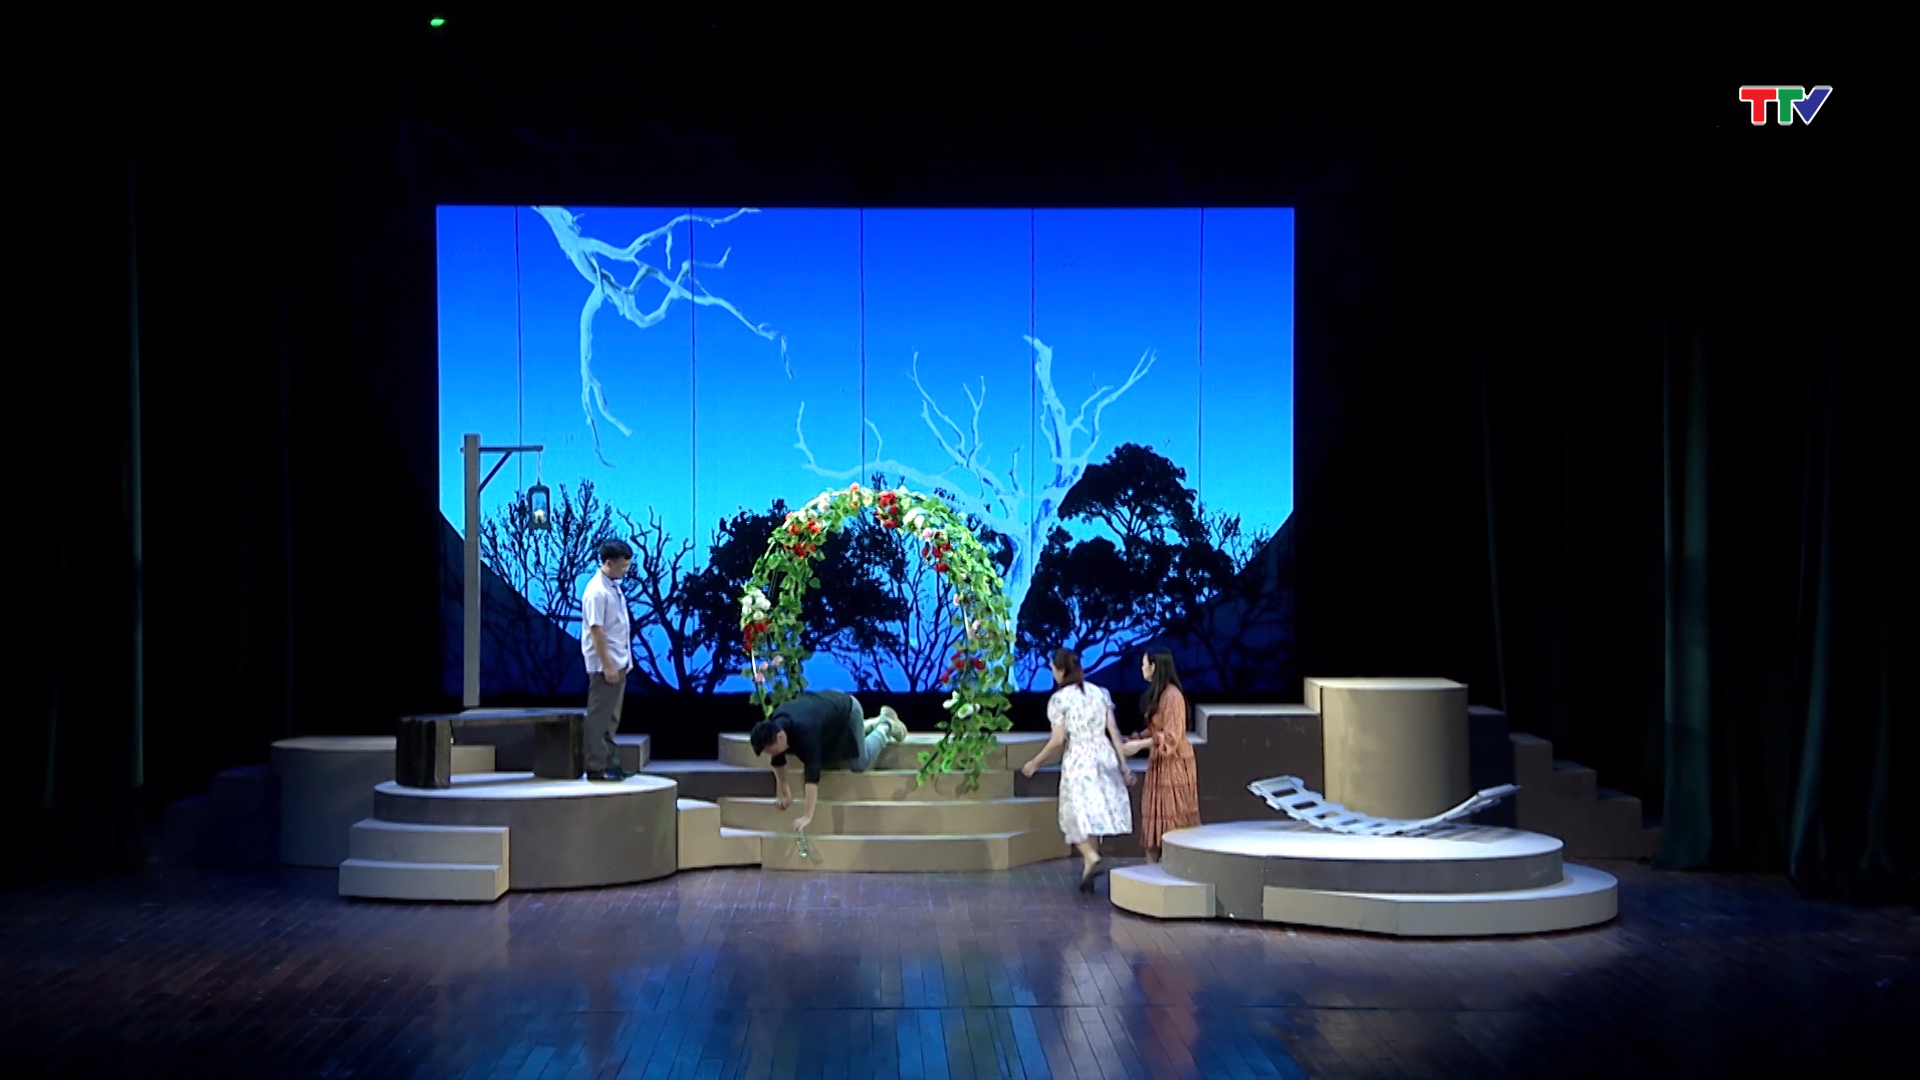 Sân khấu nghệ thuật truyền thống xứ Thanh: Mong chờ làn gió mới - Ảnh 3.